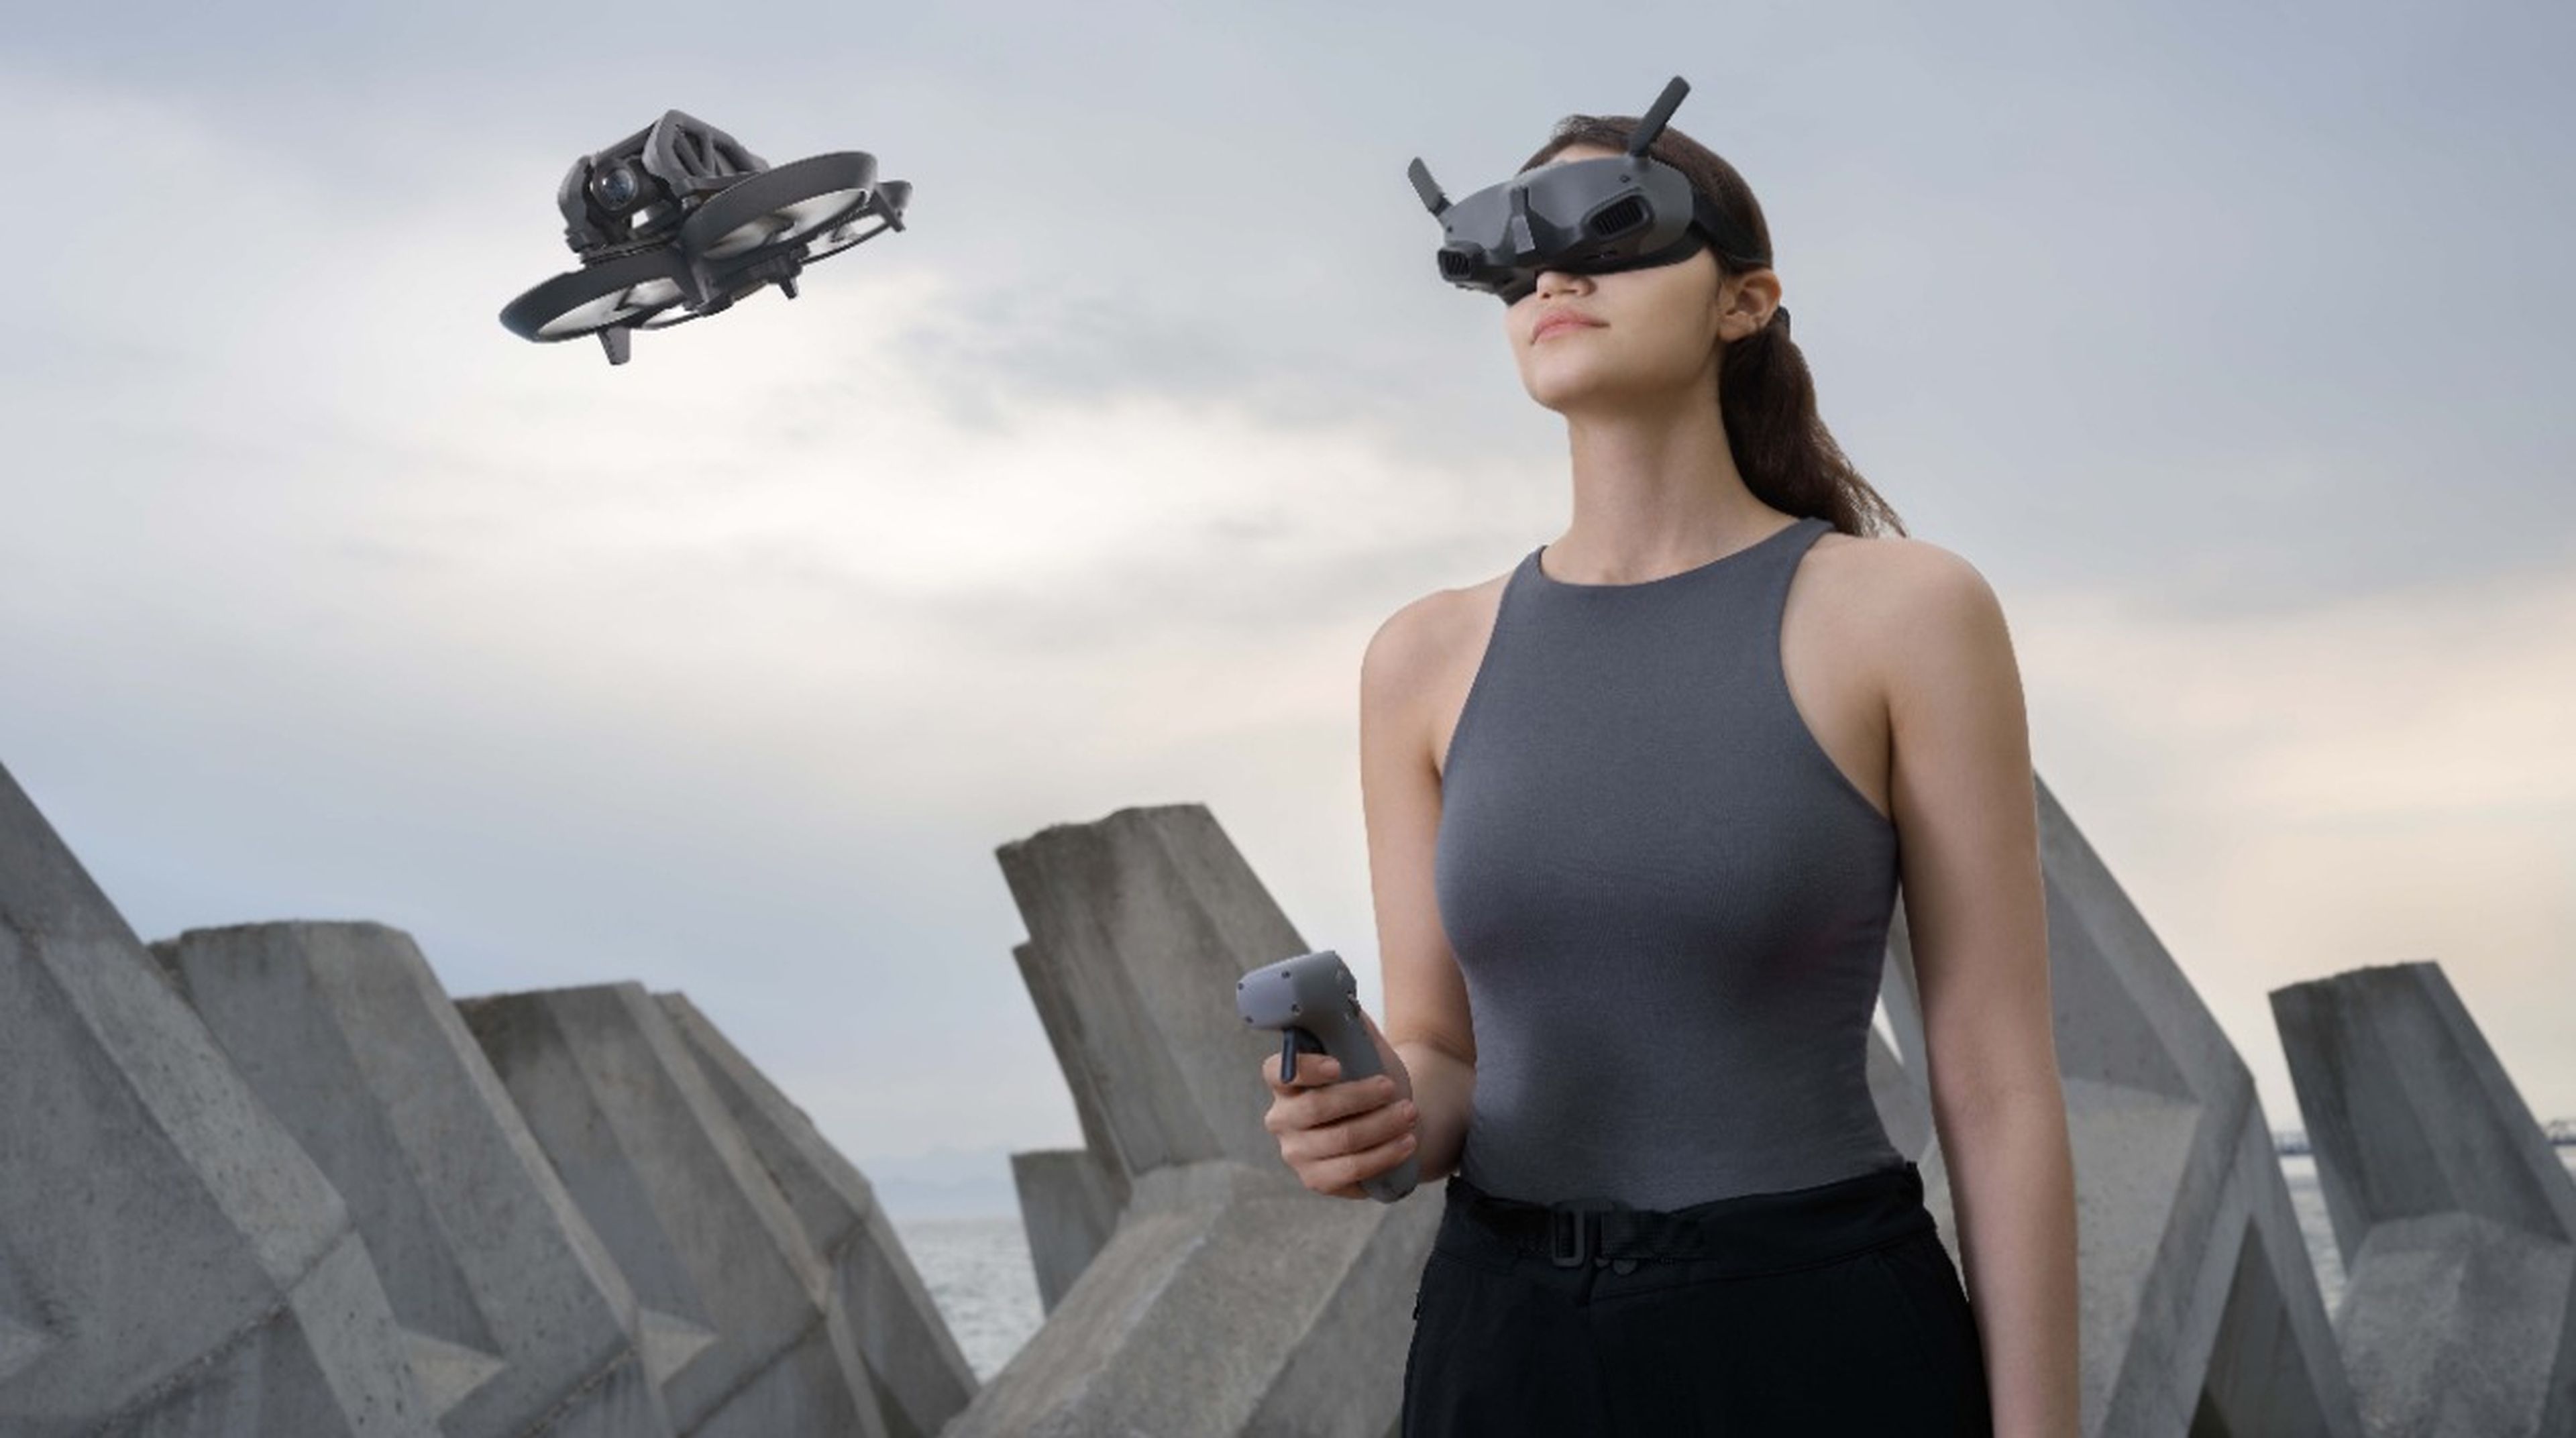 DJI anuncia unas nuevas gafas FPV y mando mejorado para llevar la experiencia de vuelo de drones a otro nivel